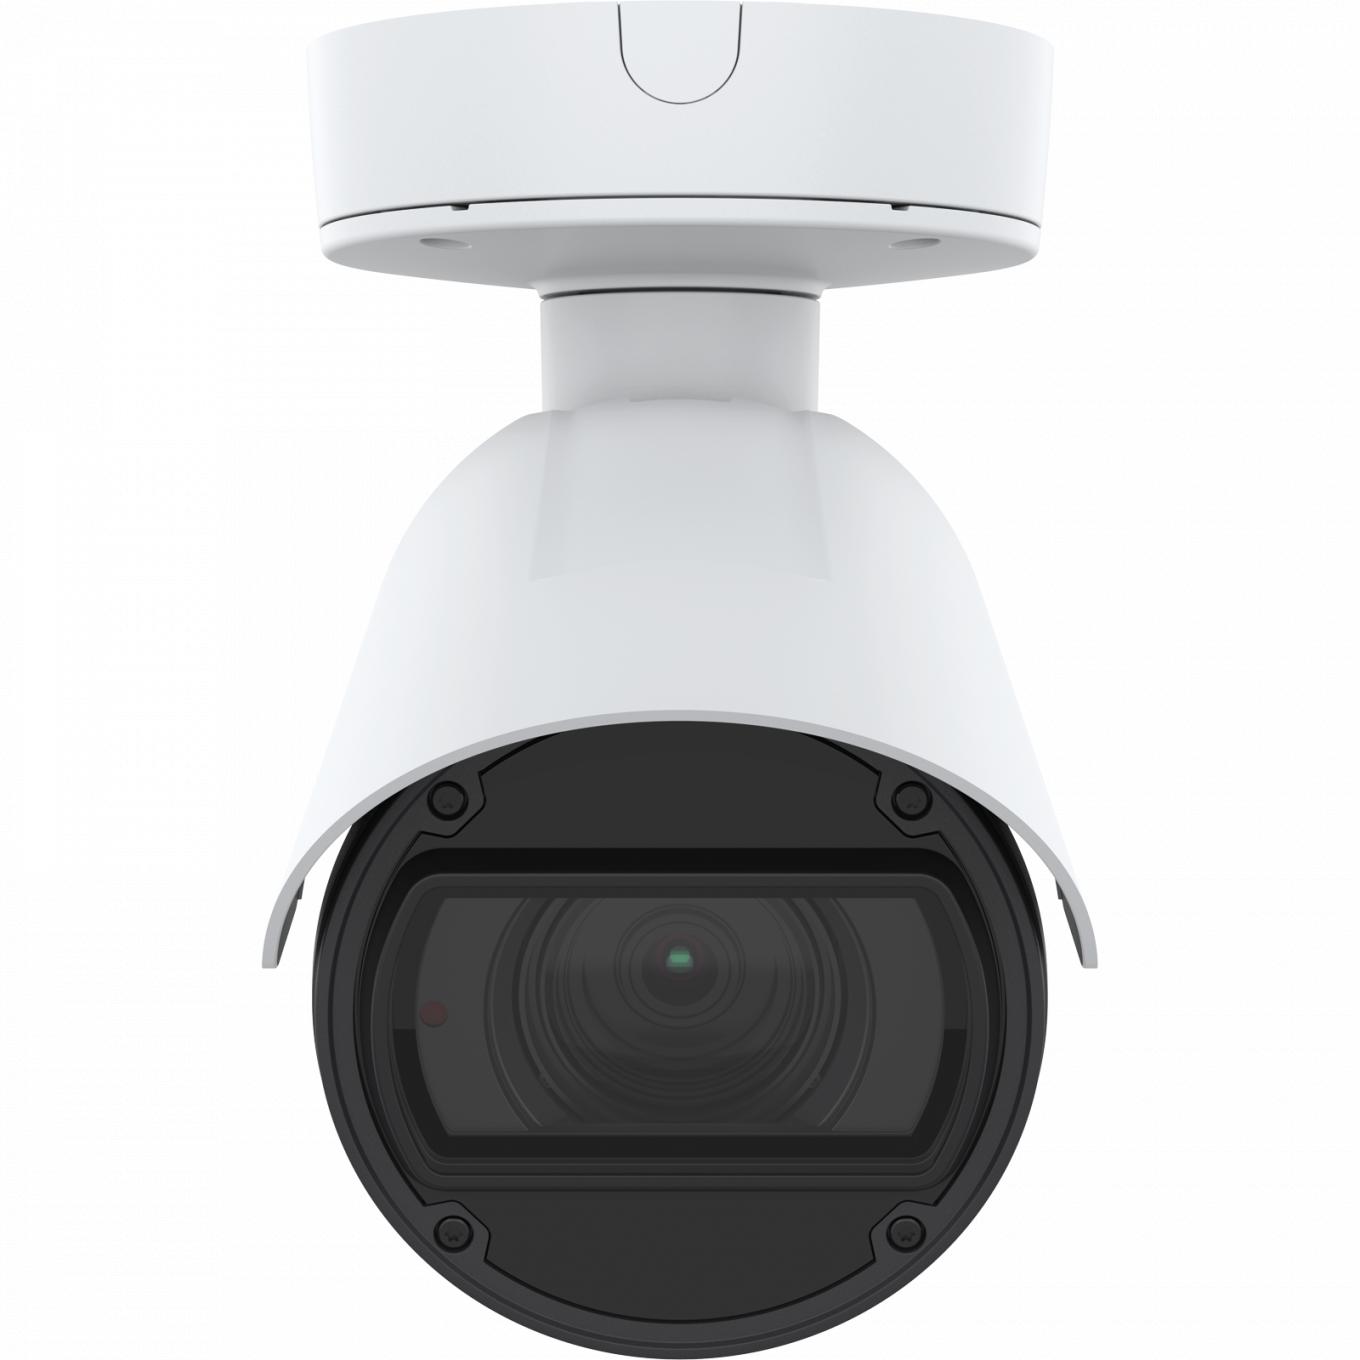 Die AXIS Q1785-LE IP Camera verfügt über OptimizedIR. Das Produkt wird in der Vorderansicht dargestellt.